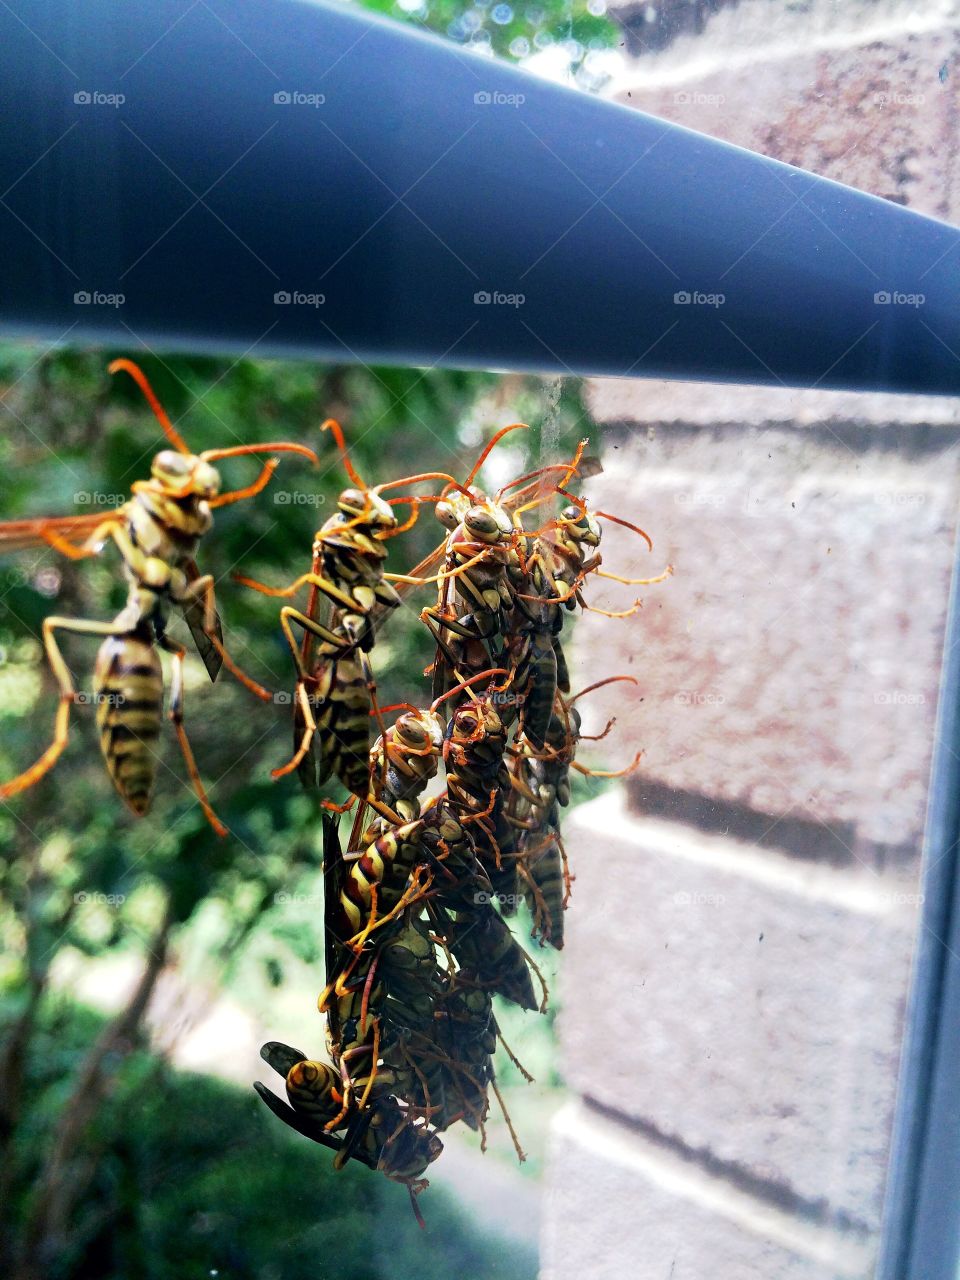 Fraternizing wasps. Group of wasps on window